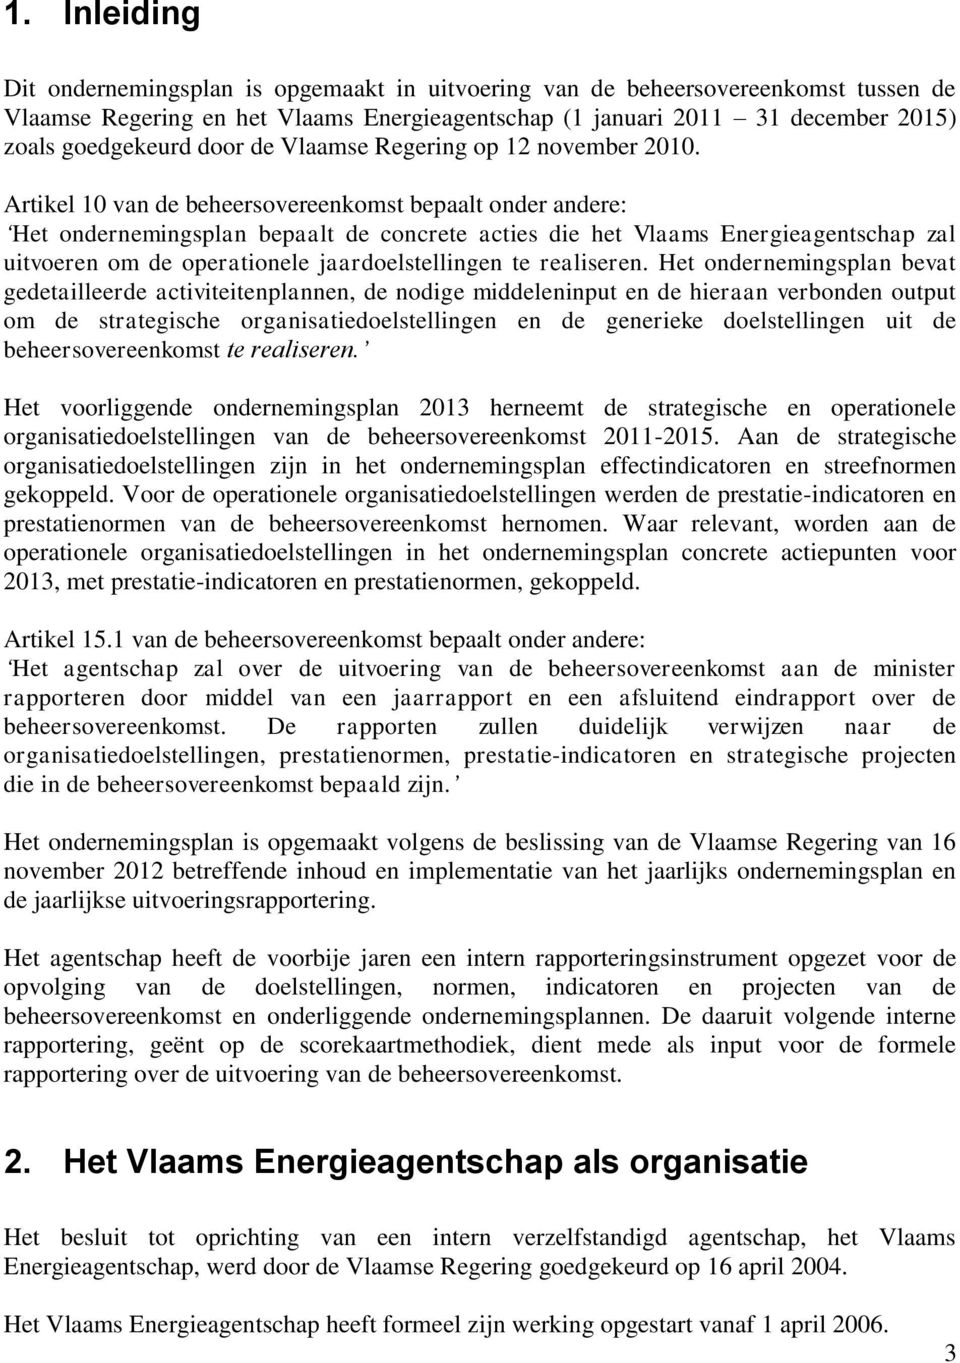 Artikel 10 van de beheersovereenkomst bepaalt onder andere: Het ondernemingsplan bepaalt de concrete acties die het Vlaams Energieagentschap zal uitvoeren om de operationele jaardoelstellingen te